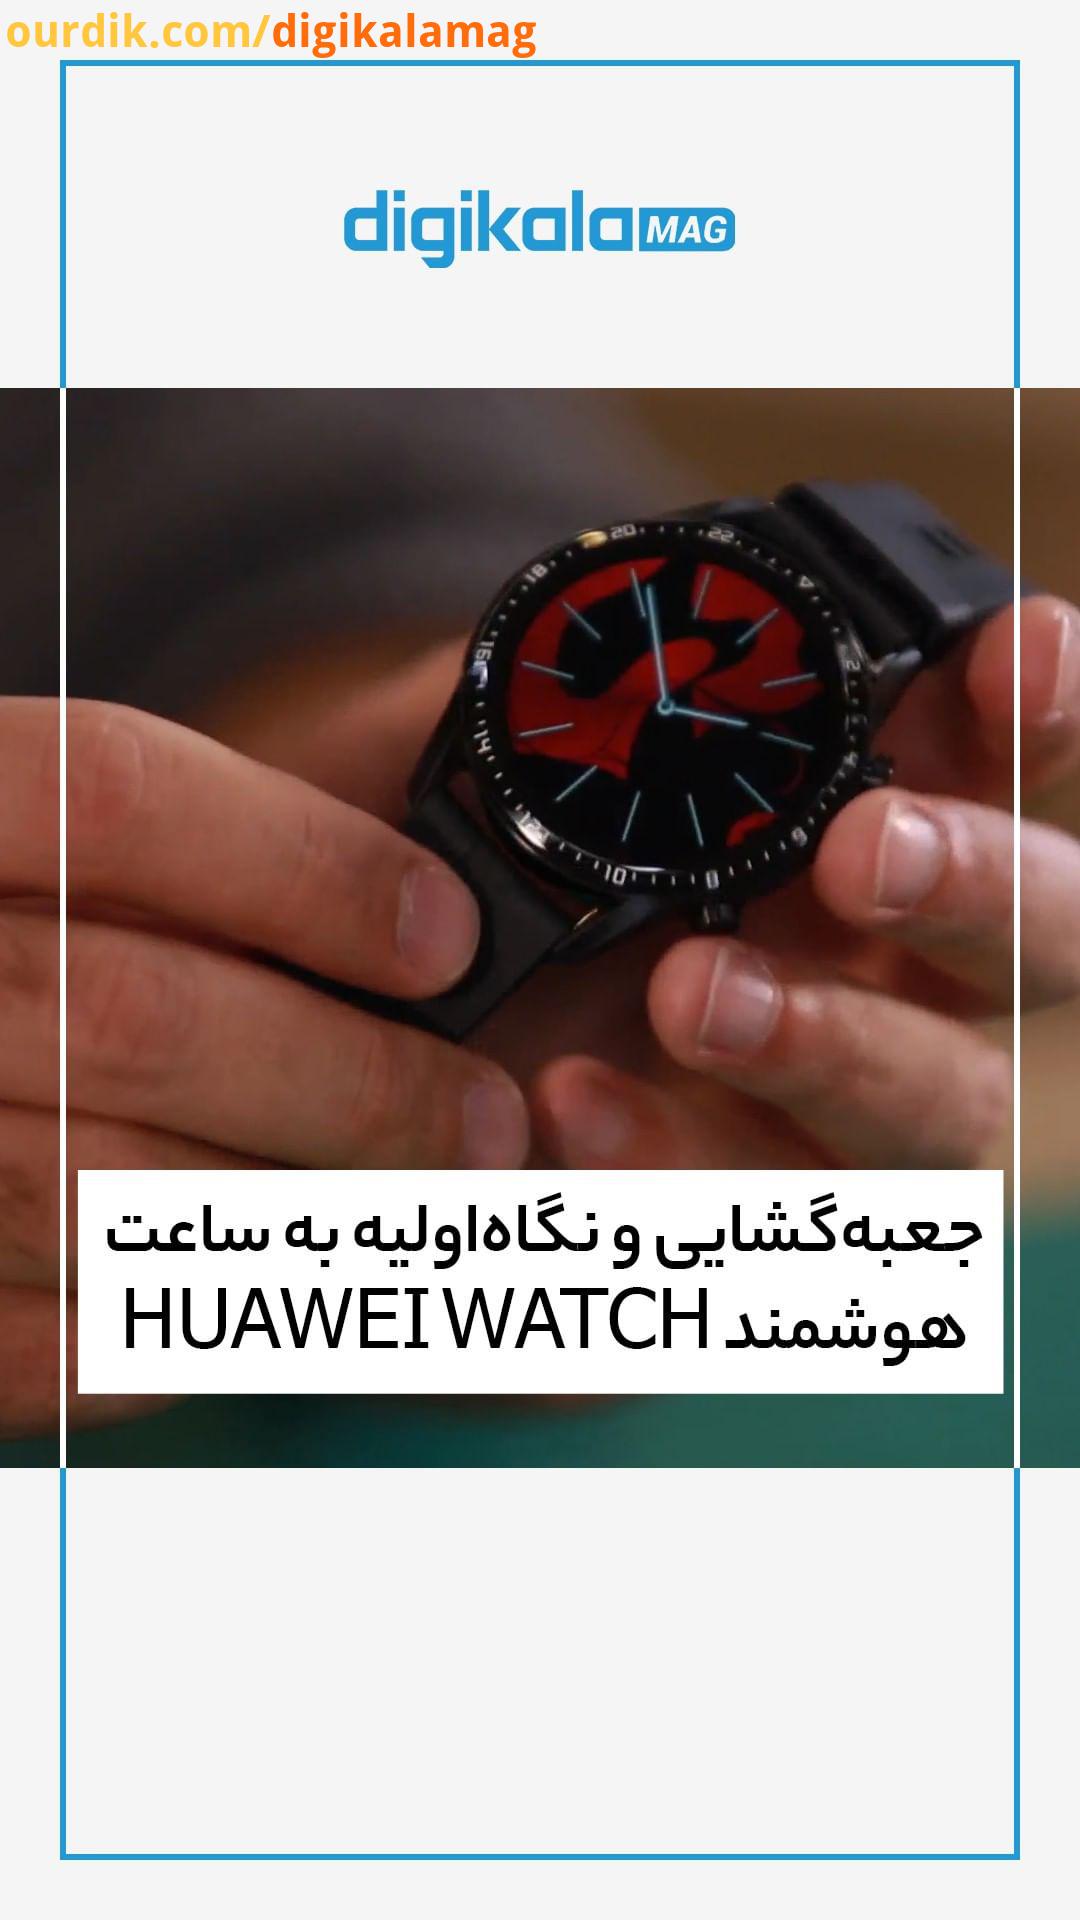 ساعت های هوشمند هواوی از گزینه های پرطرفدار دنیای اندروید هستند Watch GT2 جدیدترین مدل این شرکت به